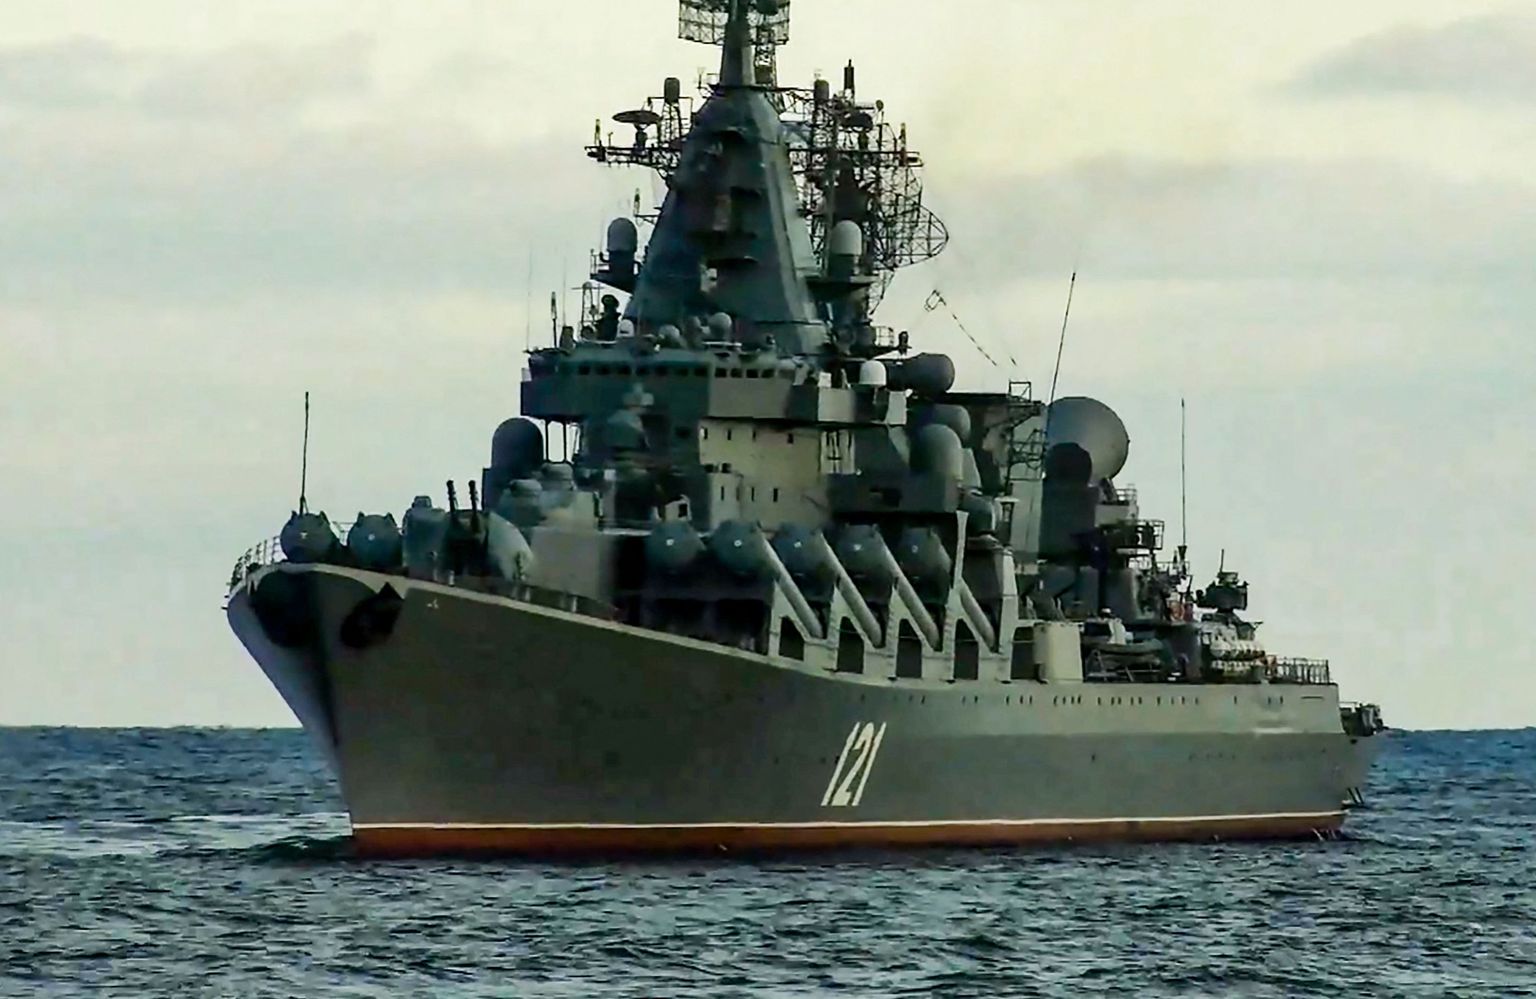 Ракетный крейсер "Москва", еще в рабочем состоянии